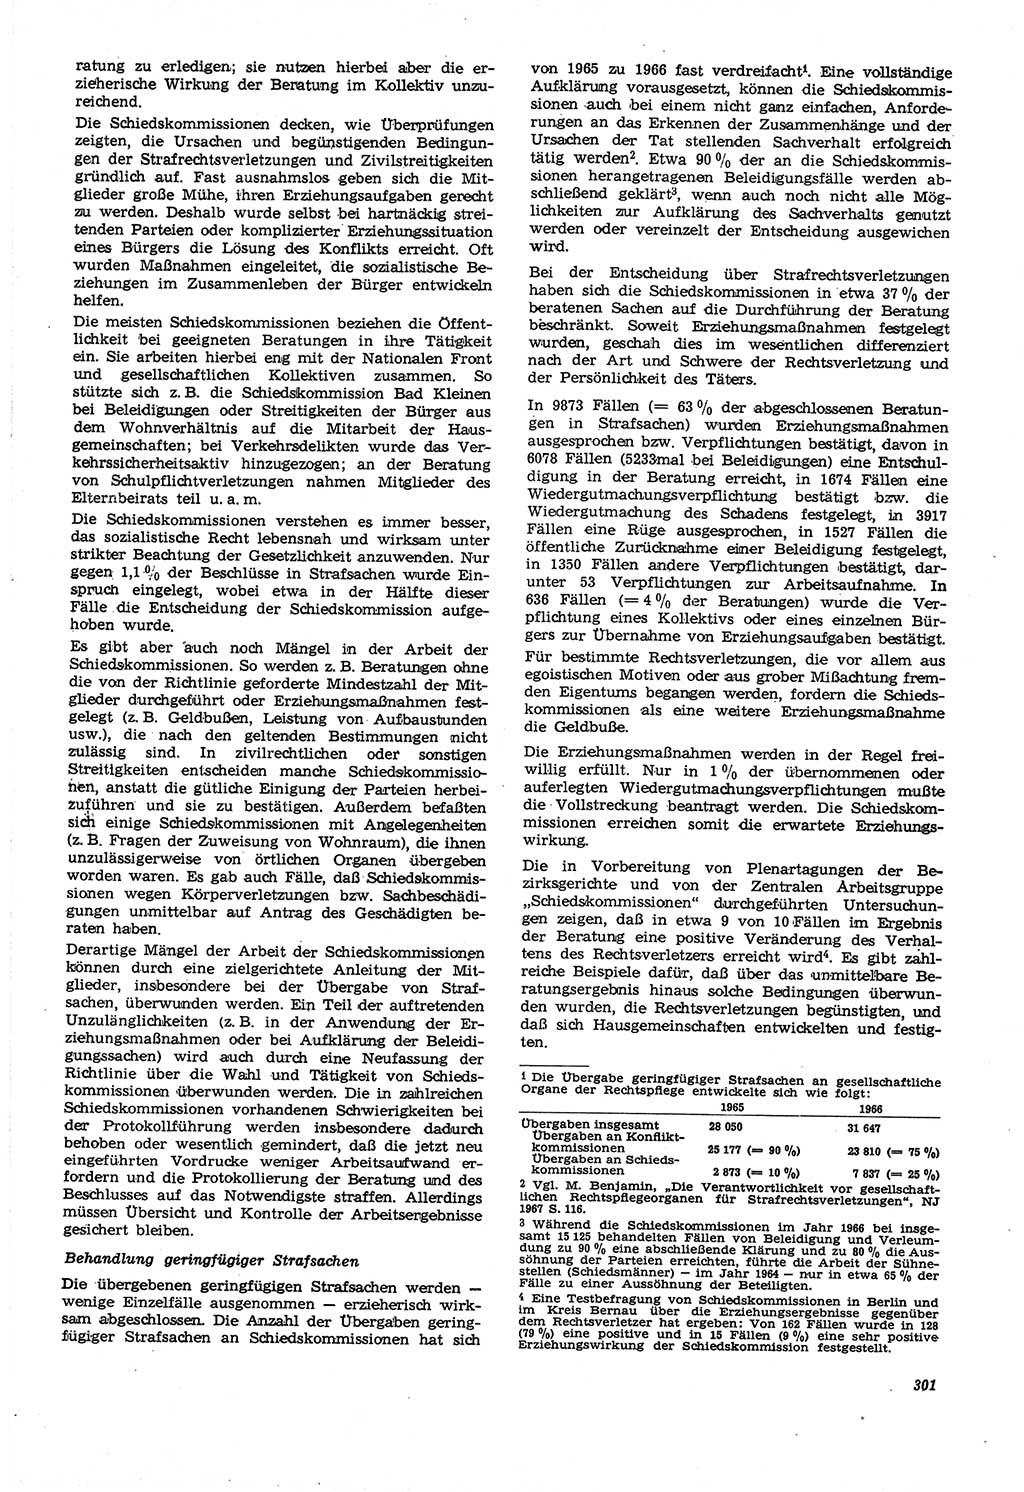 Neue Justiz (NJ), Zeitschrift für Recht und Rechtswissenschaft [Deutsche Demokratische Republik (DDR)], 21. Jahrgang 1967, Seite 301 (NJ DDR 1967, S. 301)